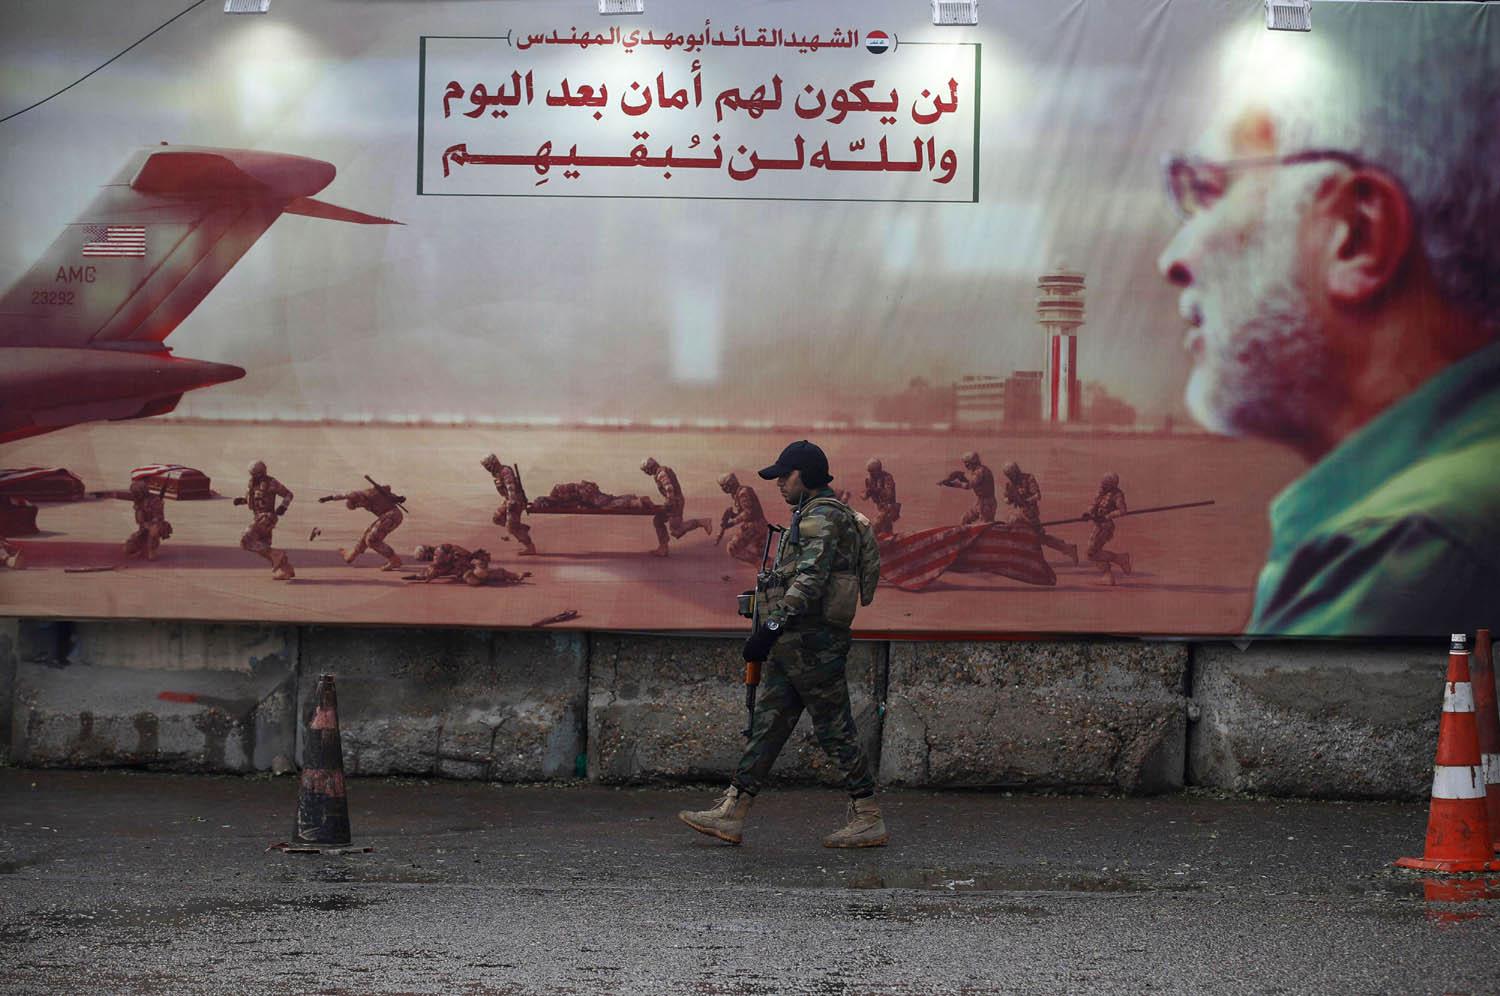 مقاتل من الحشد الشعبي أمام جدارية لأبو مهدي المهندس في بغداد